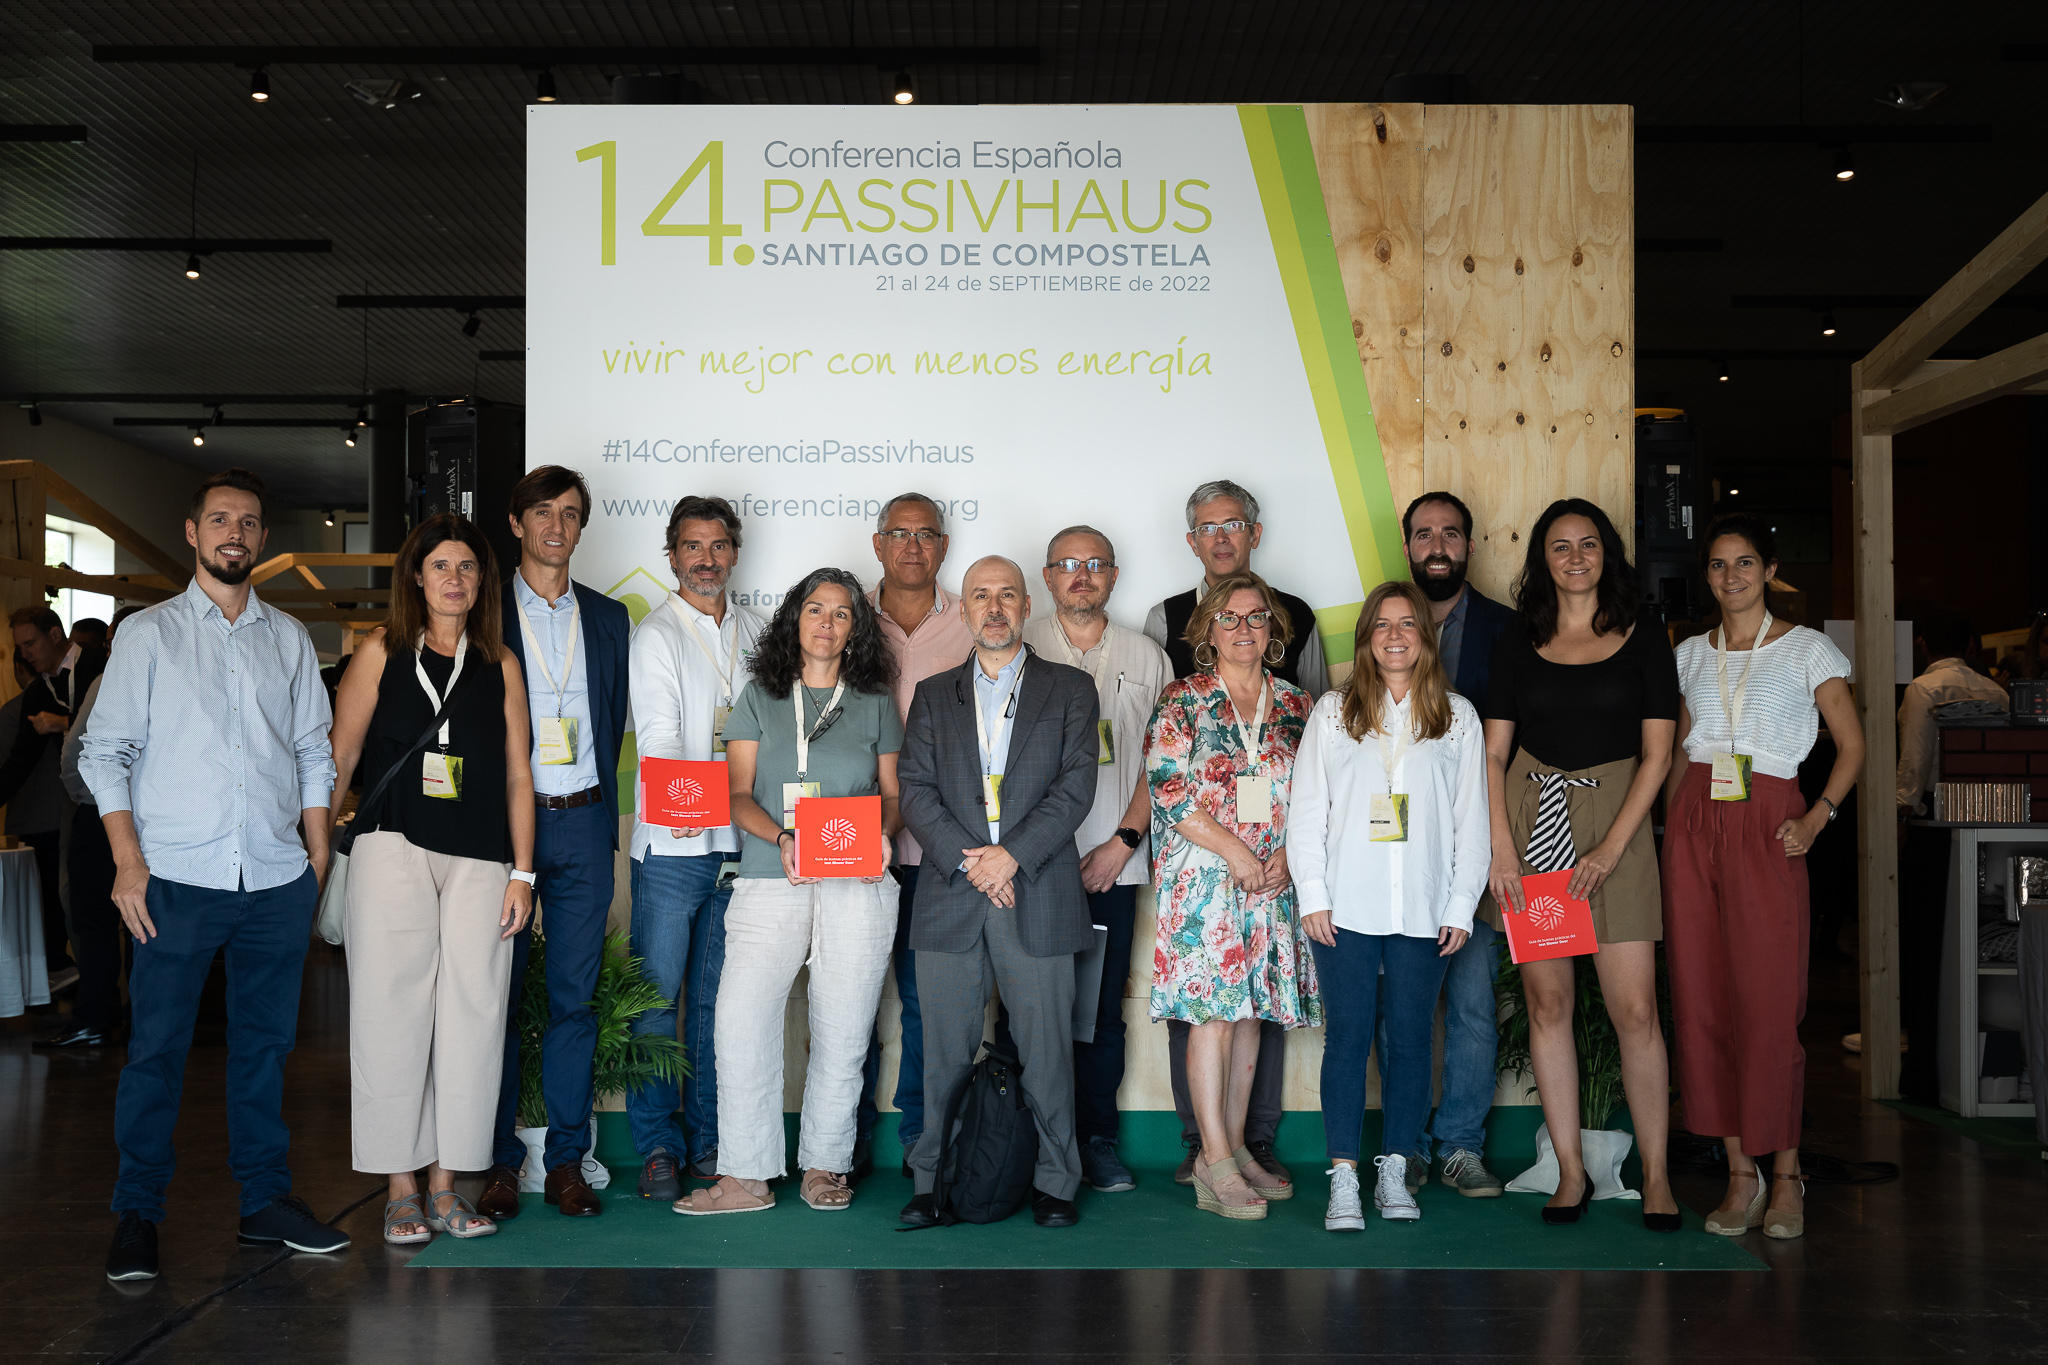 La 14ª Conferencia Española Passivhaus cierra con gran éxito y más de 500 asistentes 